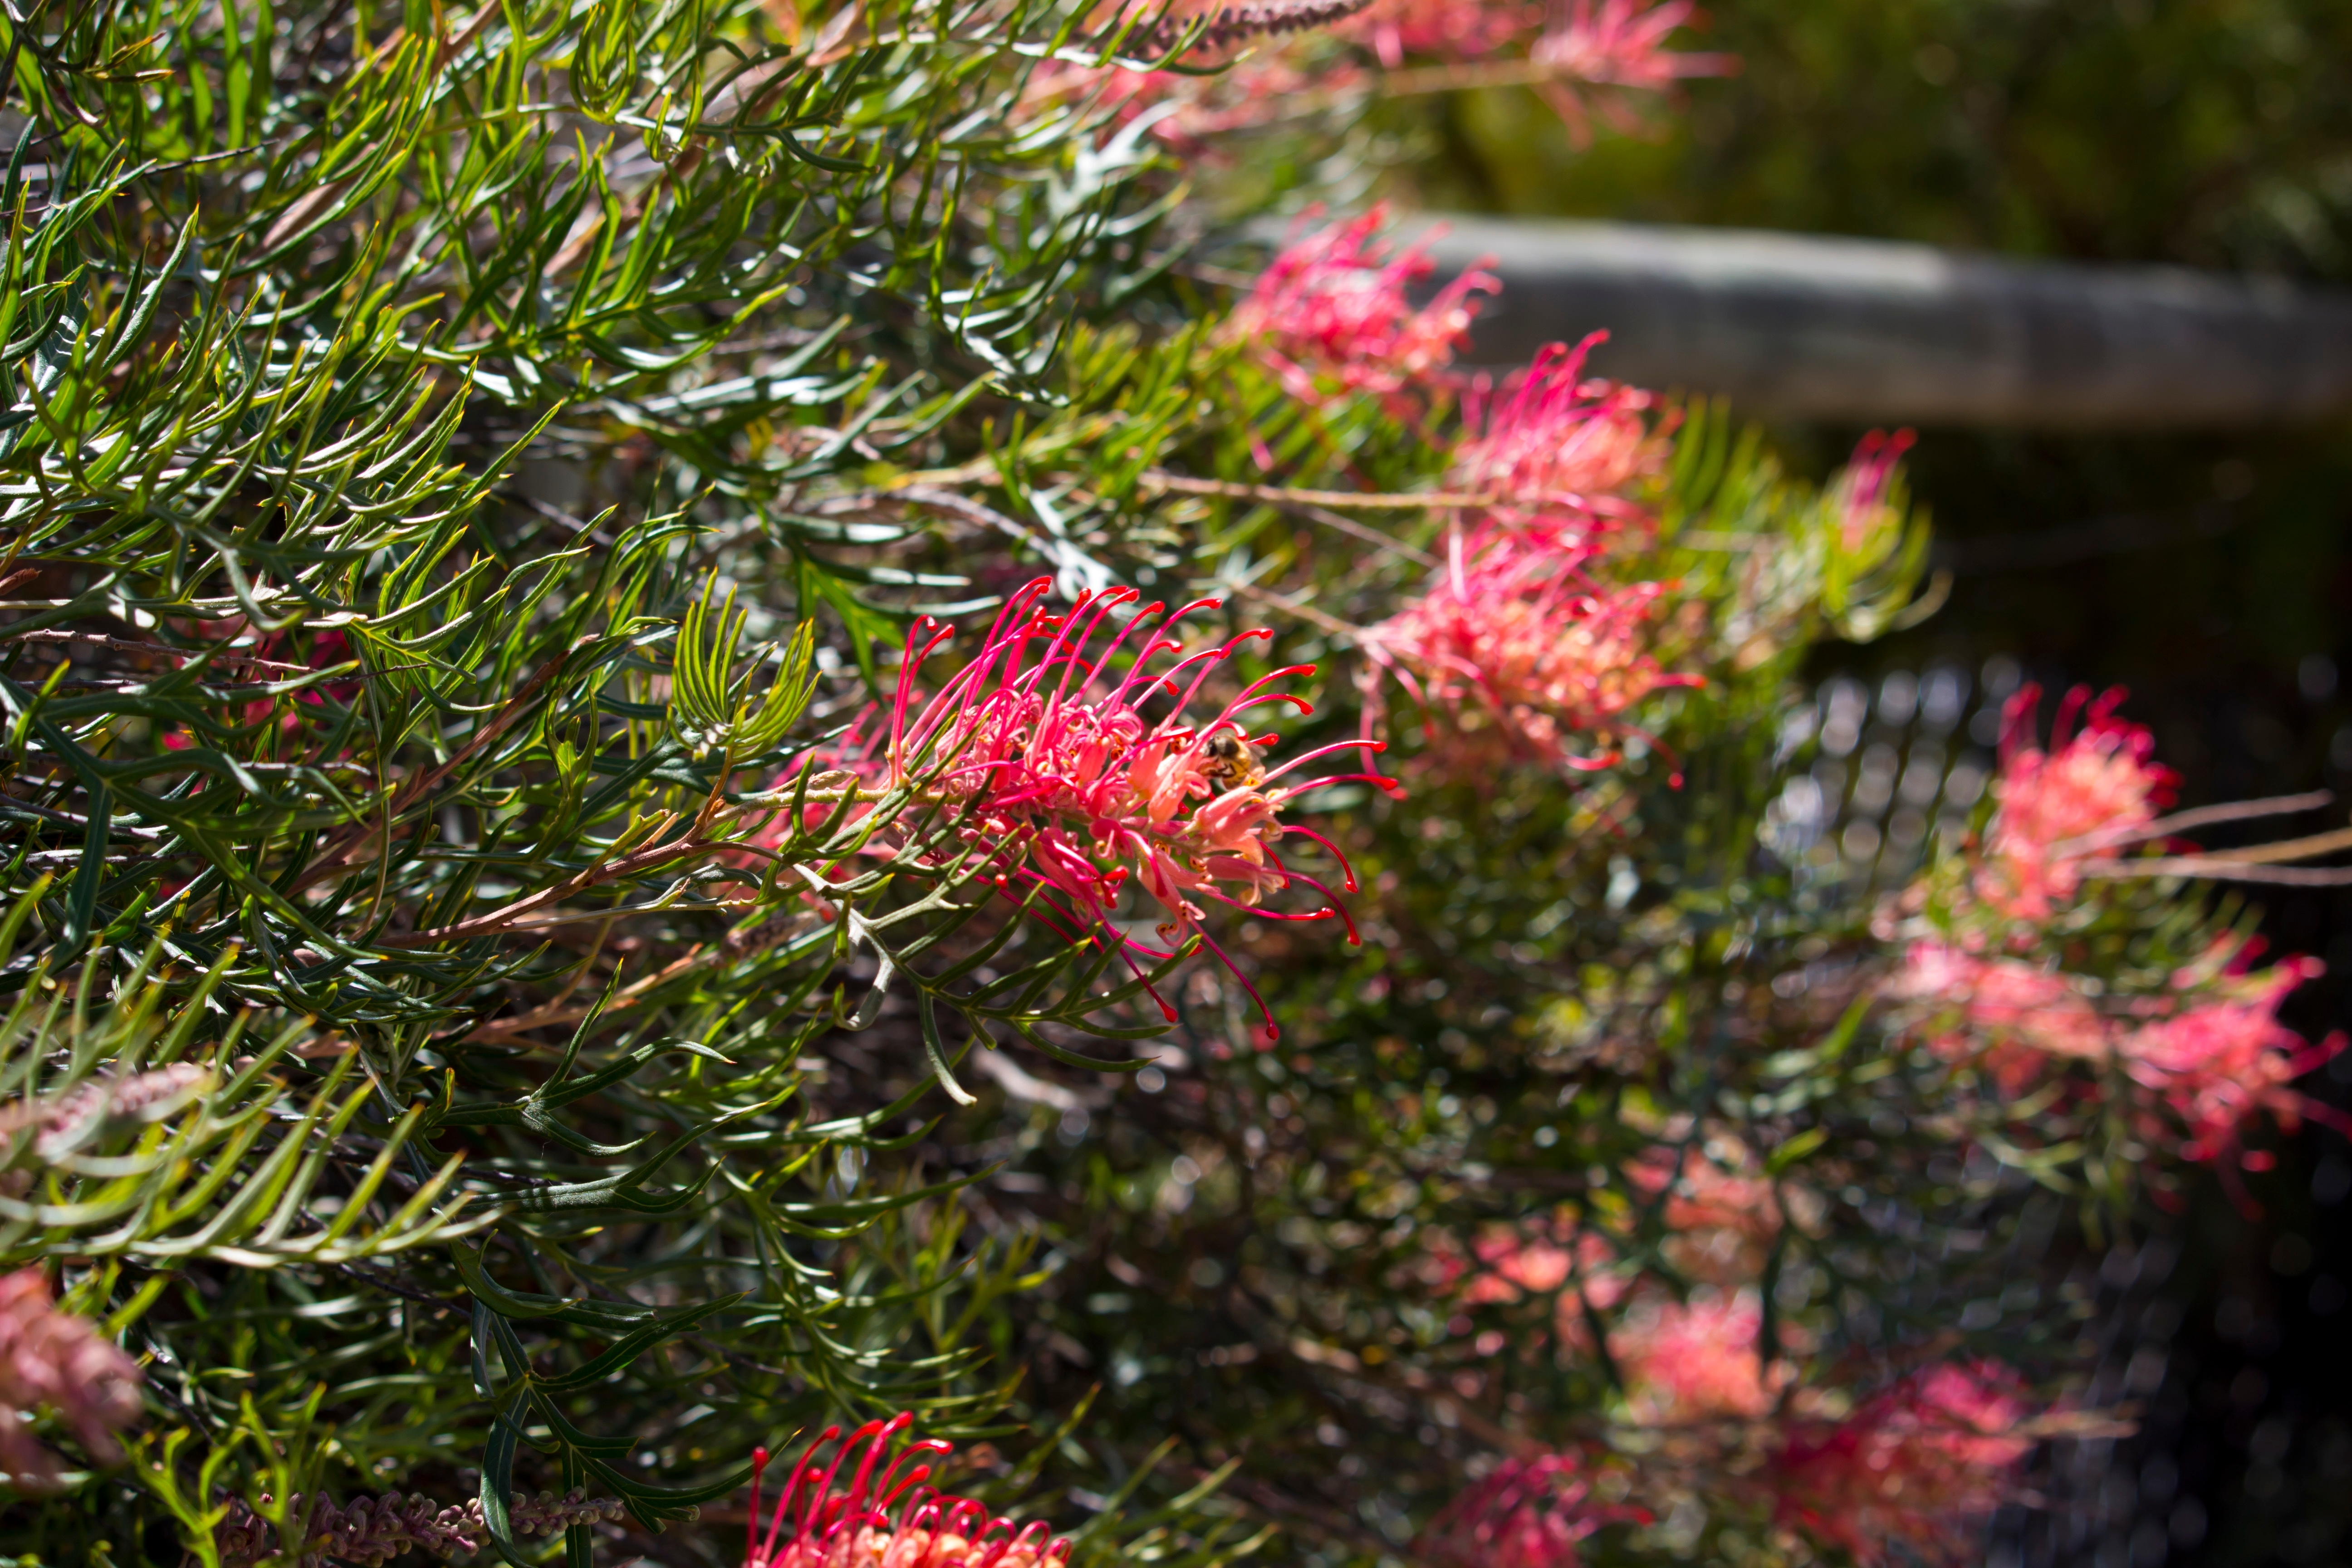 Le Grevillea ou grévillier est un arbuste vivace qui se caractérise par l’originalité de ses fleurs aux allures exotiques et aux couleurs variées. Copyright (c) 2023 alybaba/Shutterstock.